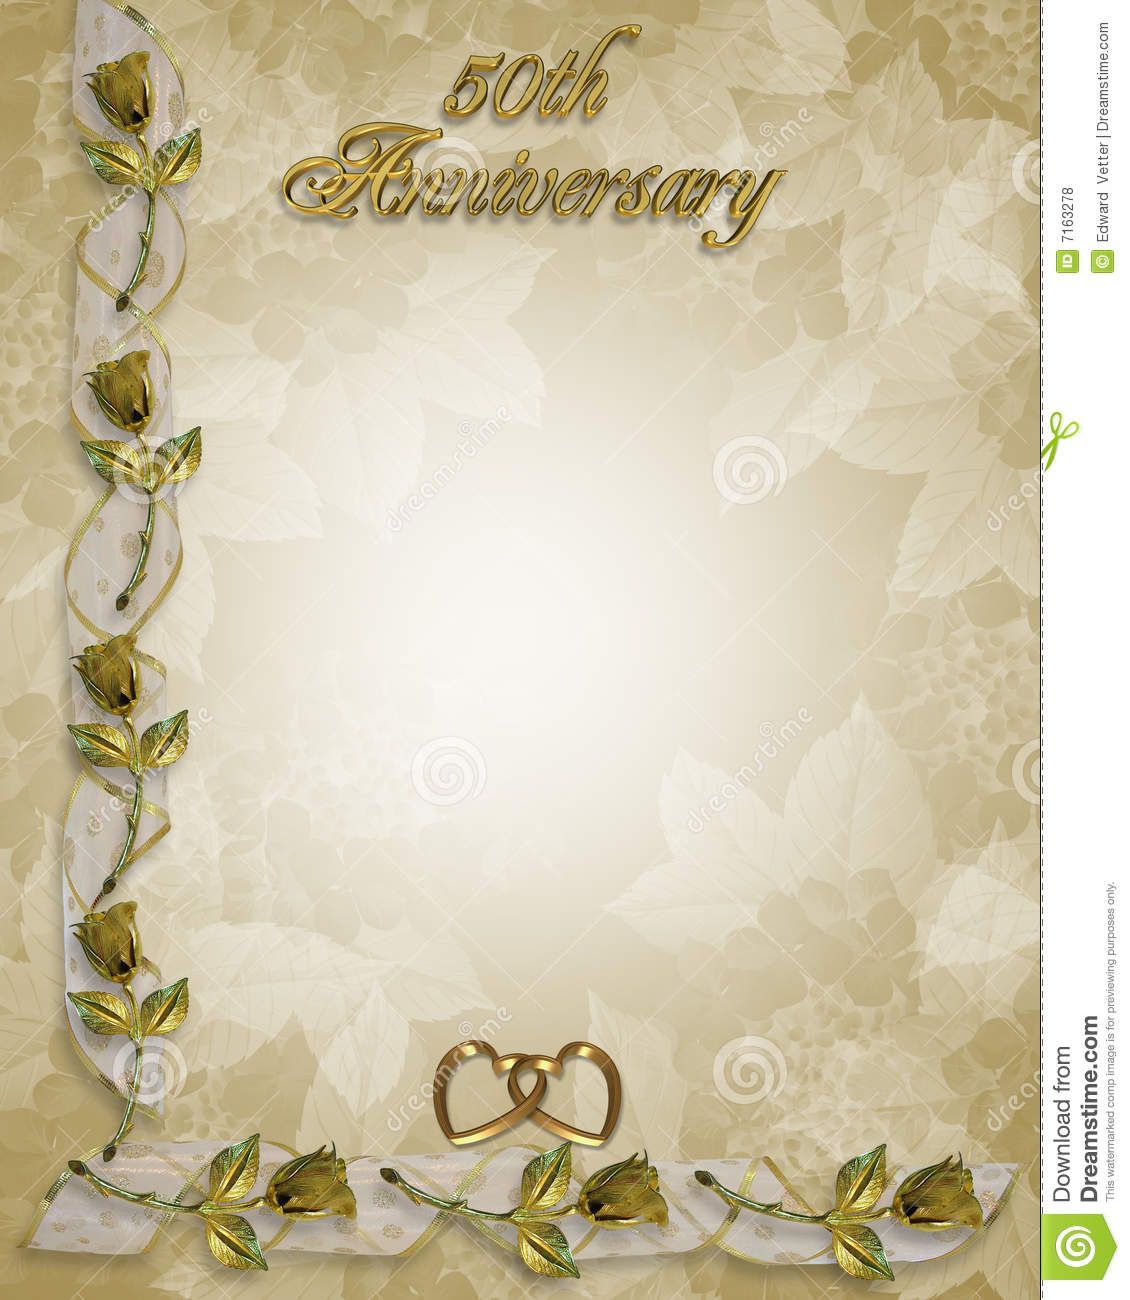 Пустая открытка с золотой свадьбой